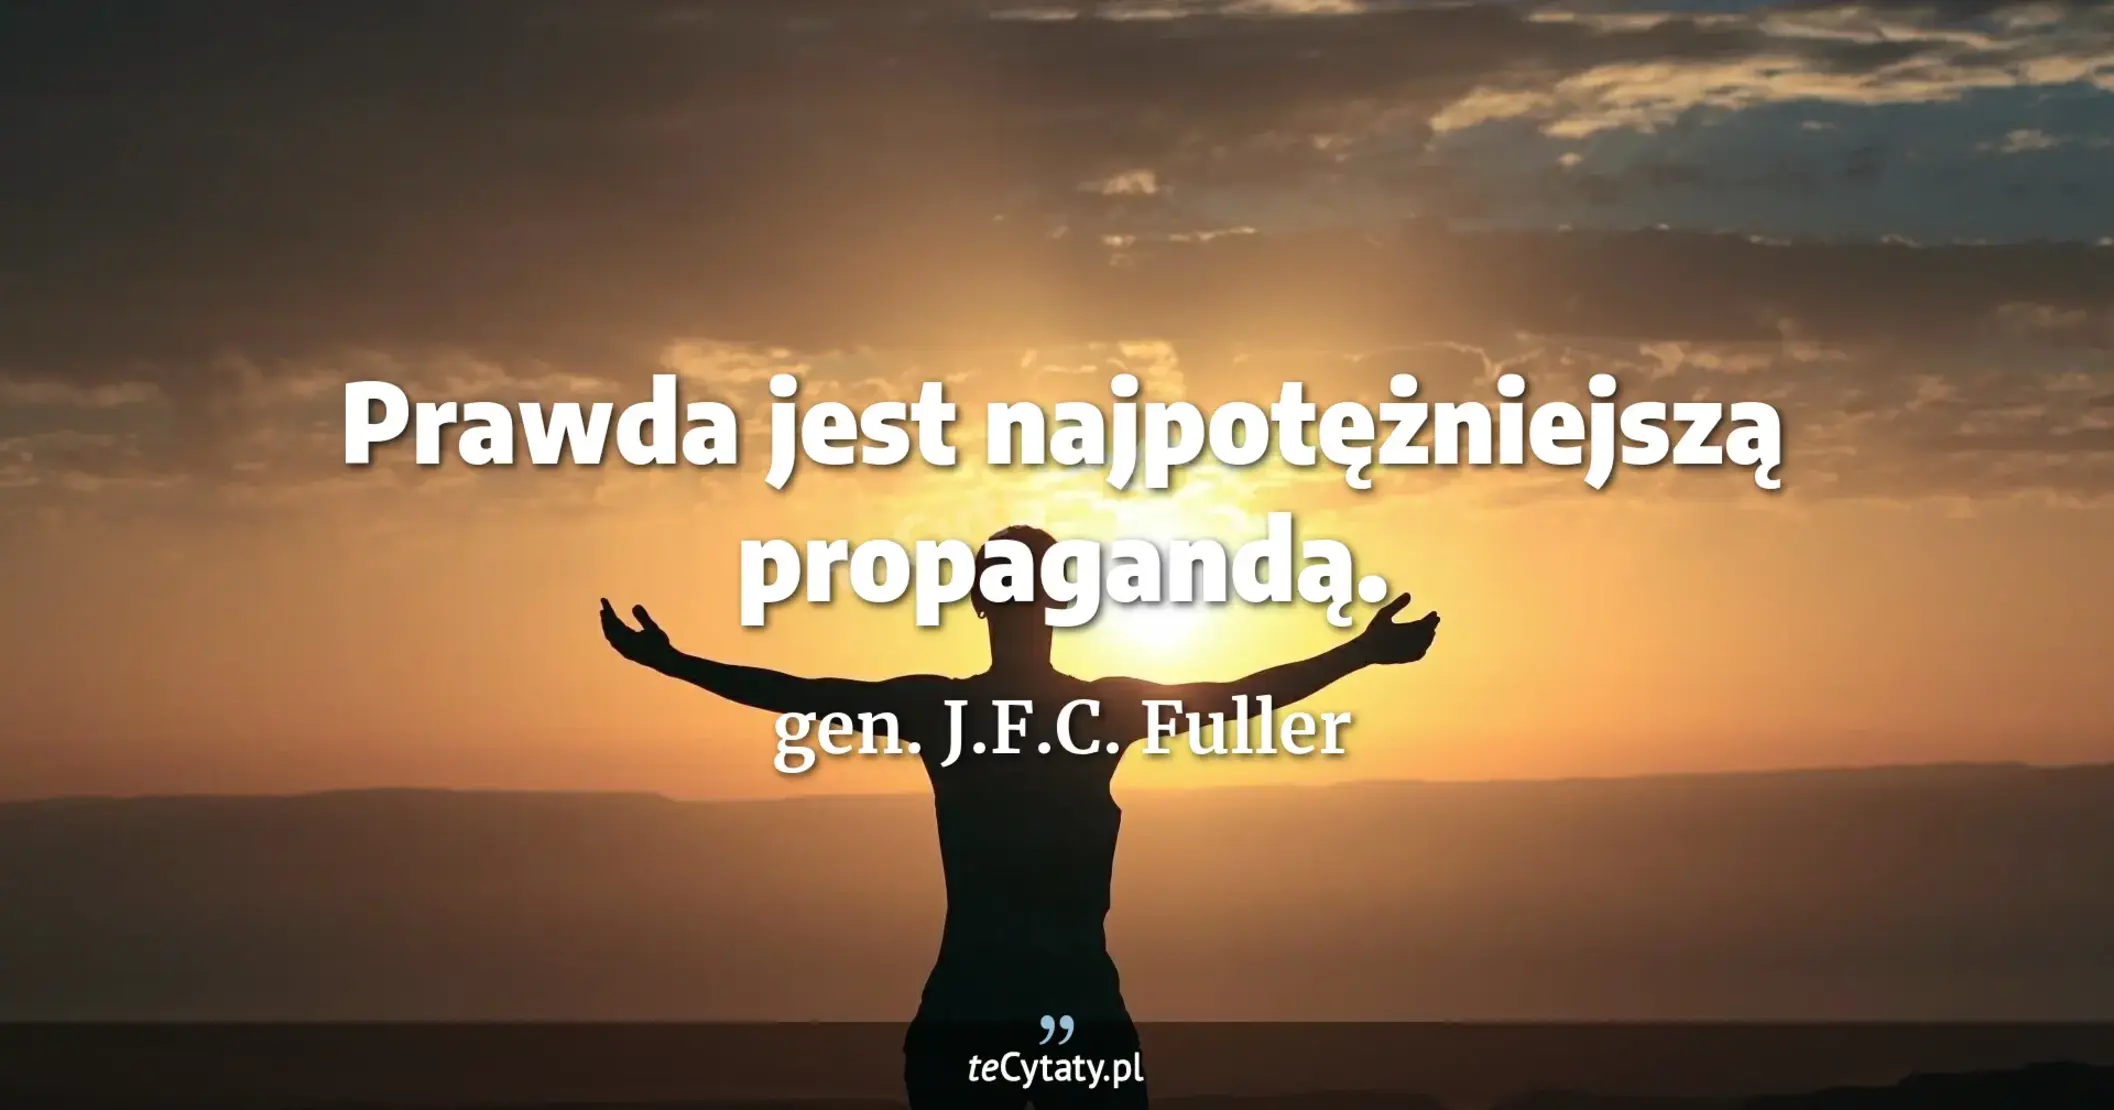 Prawda jest najpotężniejszą propagandą. - gen. J.F.C. Fuller